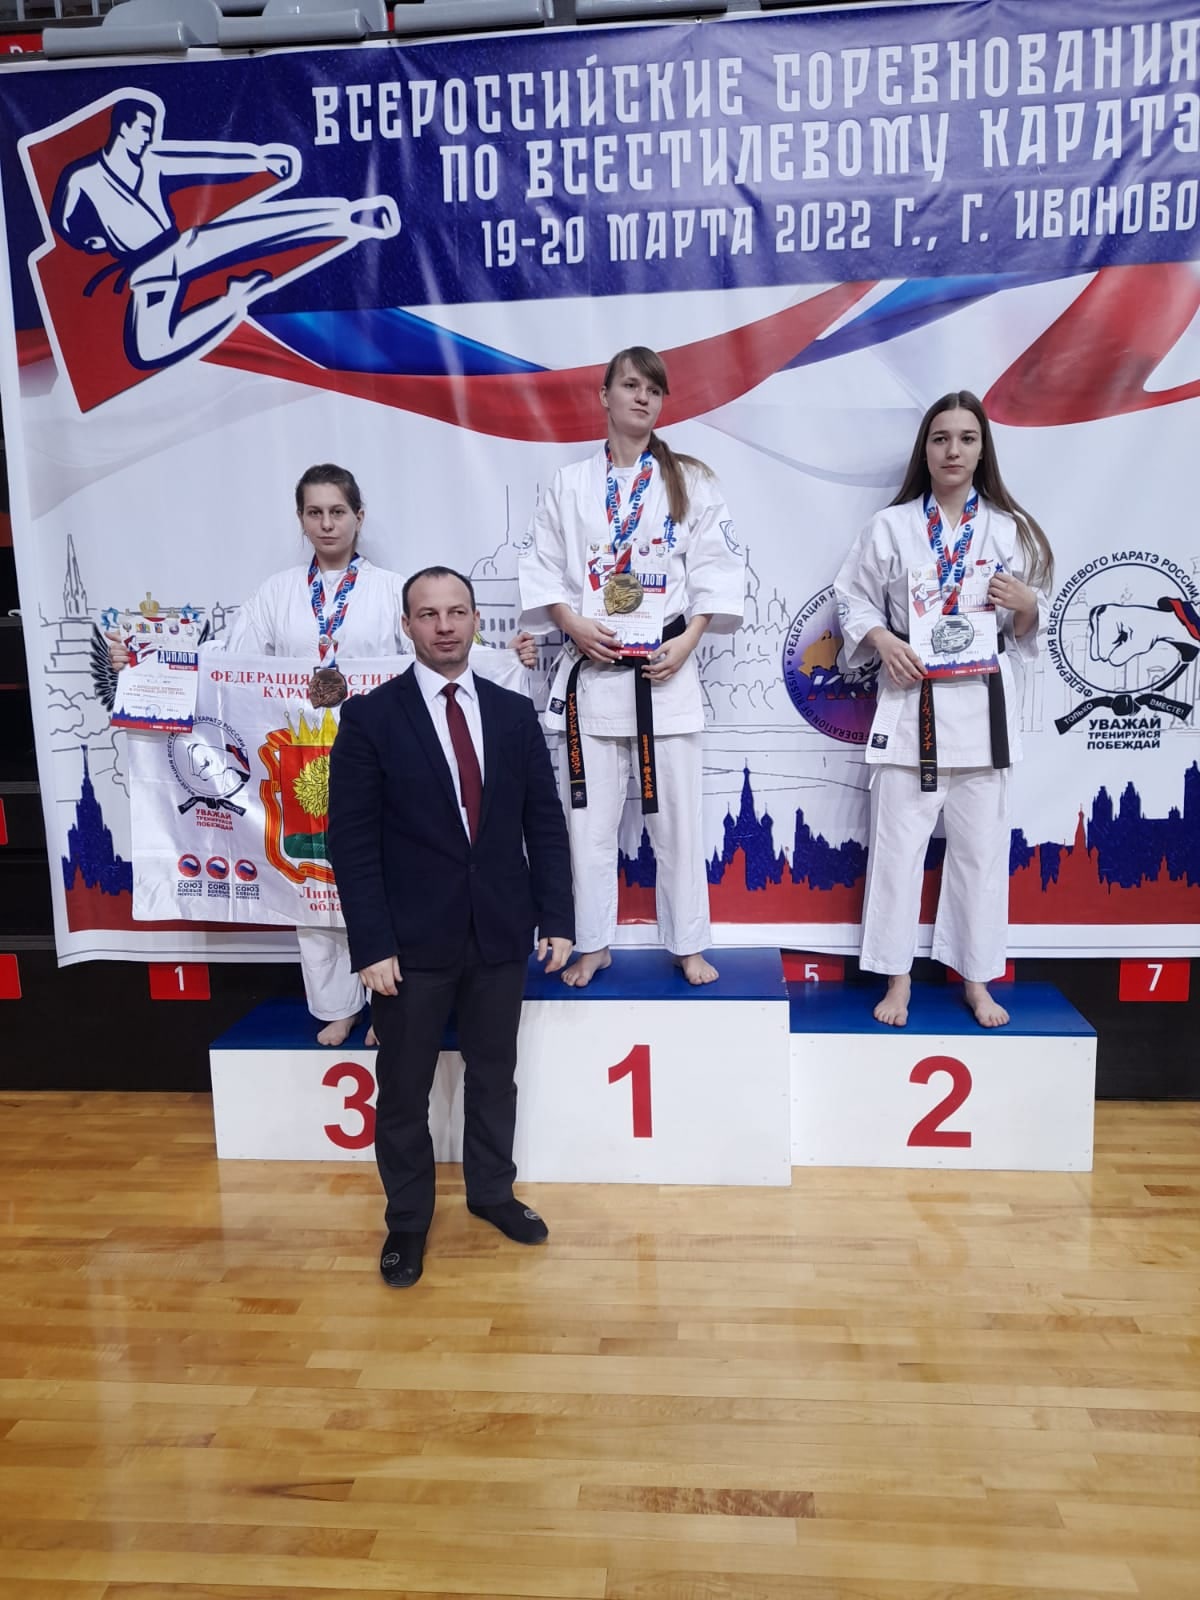 Всероссийские соревнования по всестилевому каратэ в г. Иваново